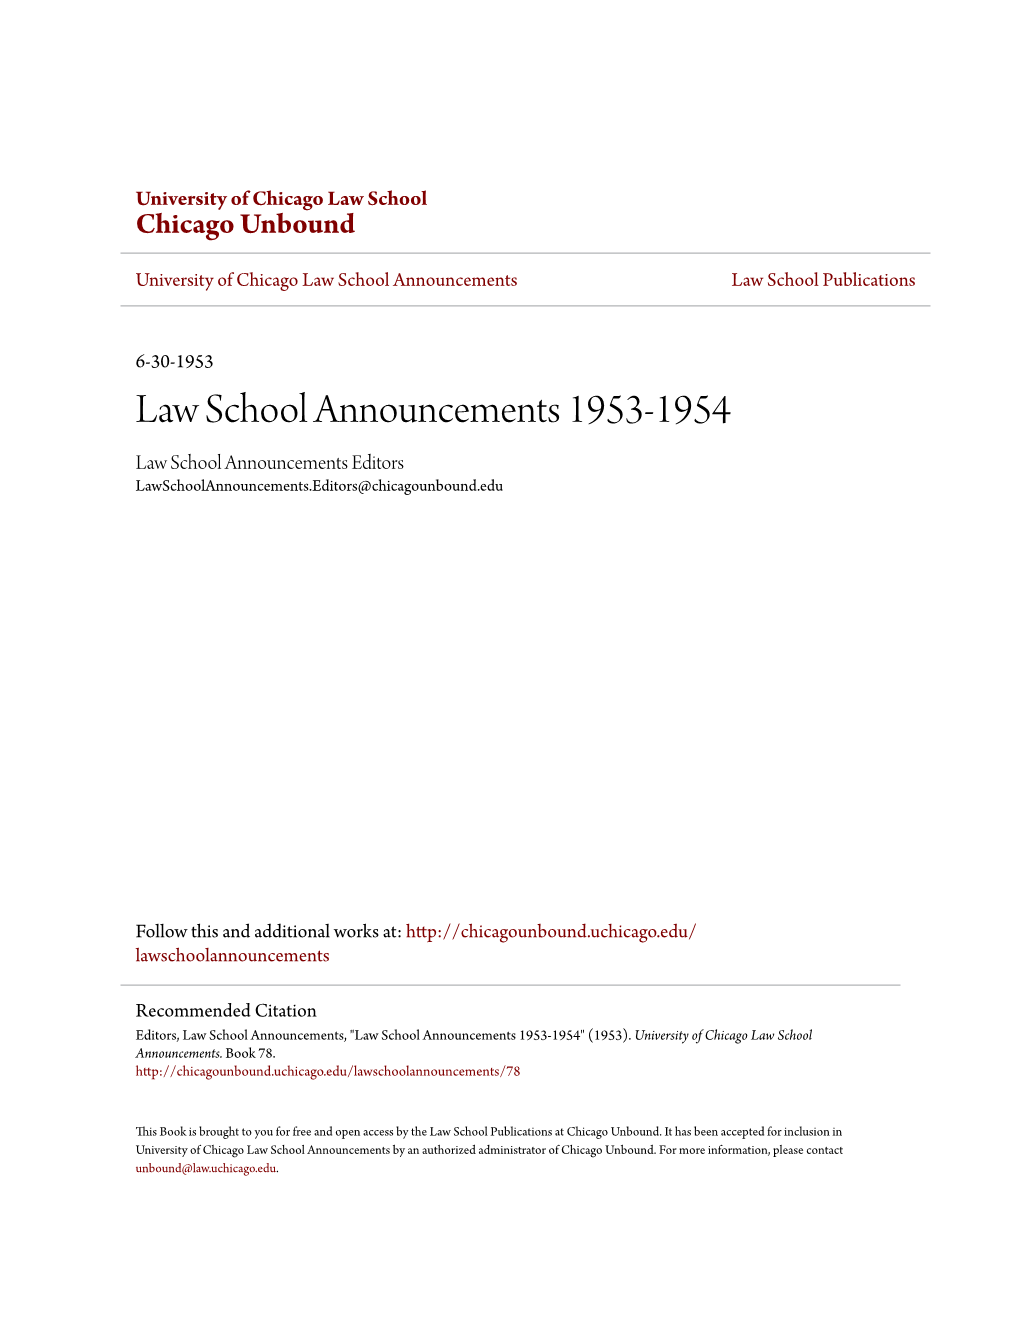 Law School Announcements 1953-1954 Law School Announcements Editors Lawschoolannouncements.Editors@Chicagounbound.Edu